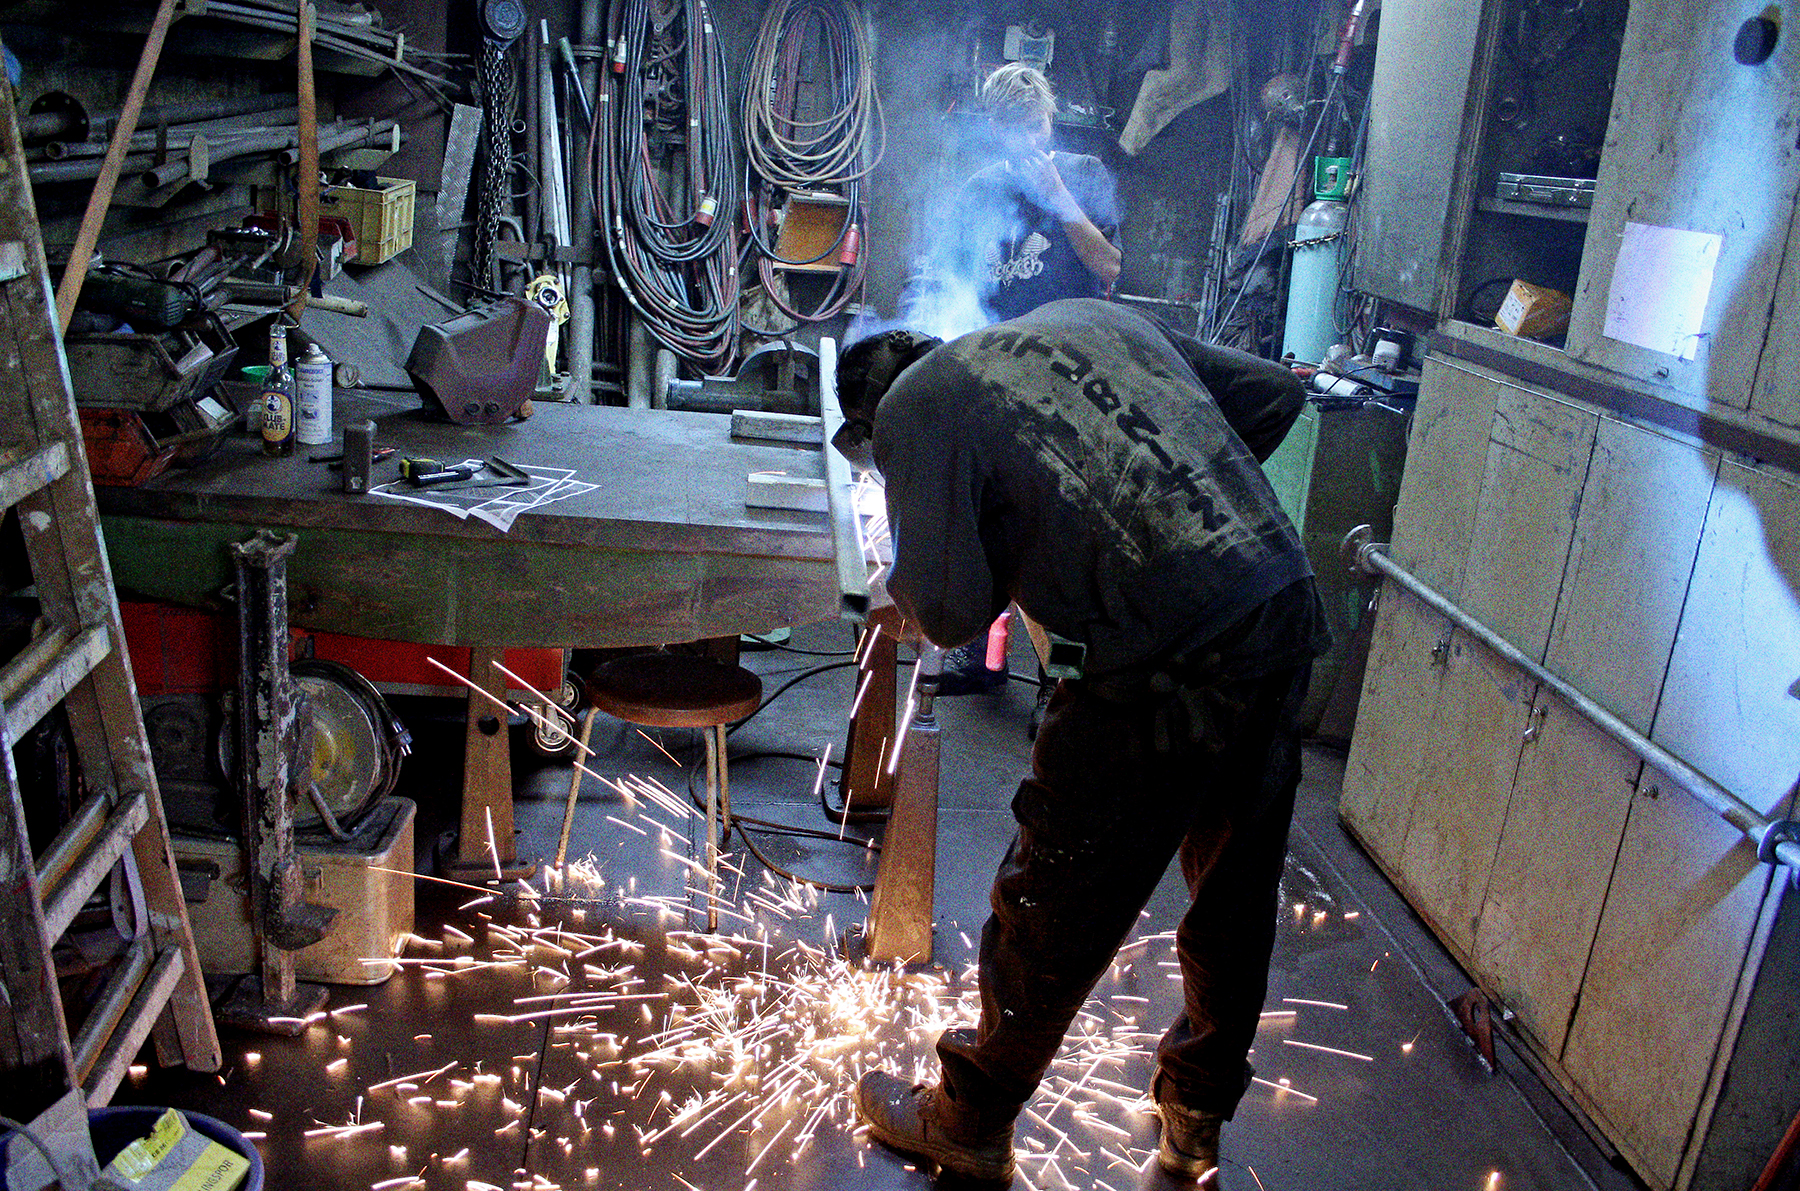 Arbeiten in der Metallwerkstatt. Ein Mensch bearbeitet ein Metallstück mit einem Winkelschleifer. Funken sprühen.